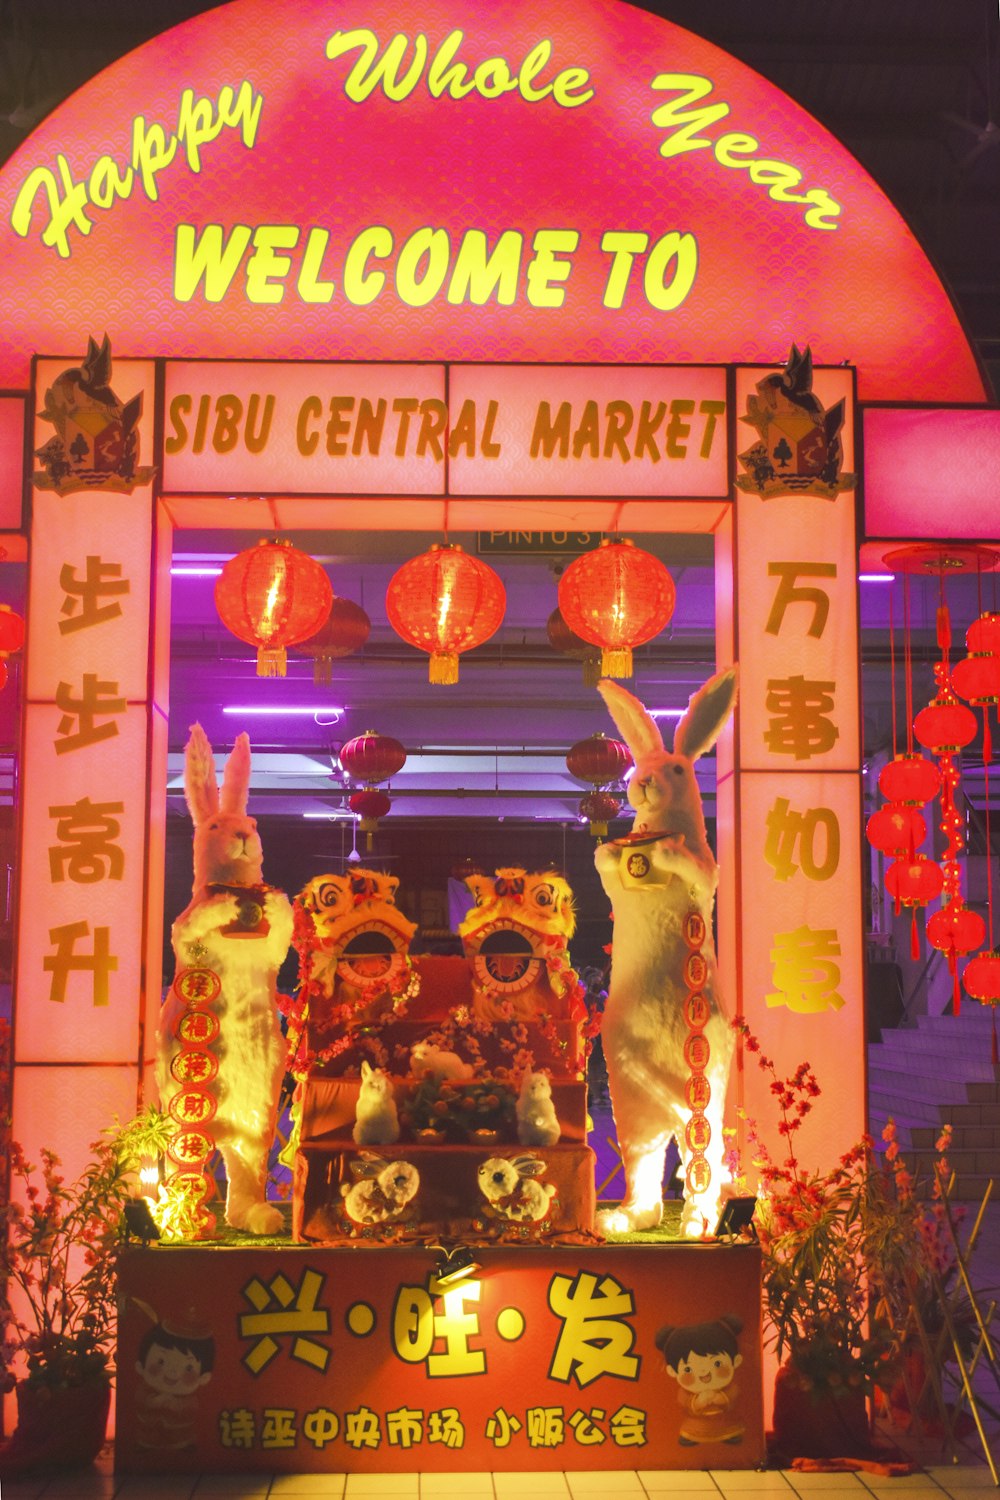 Un cartel de bienvenida a un mercado central con conejos